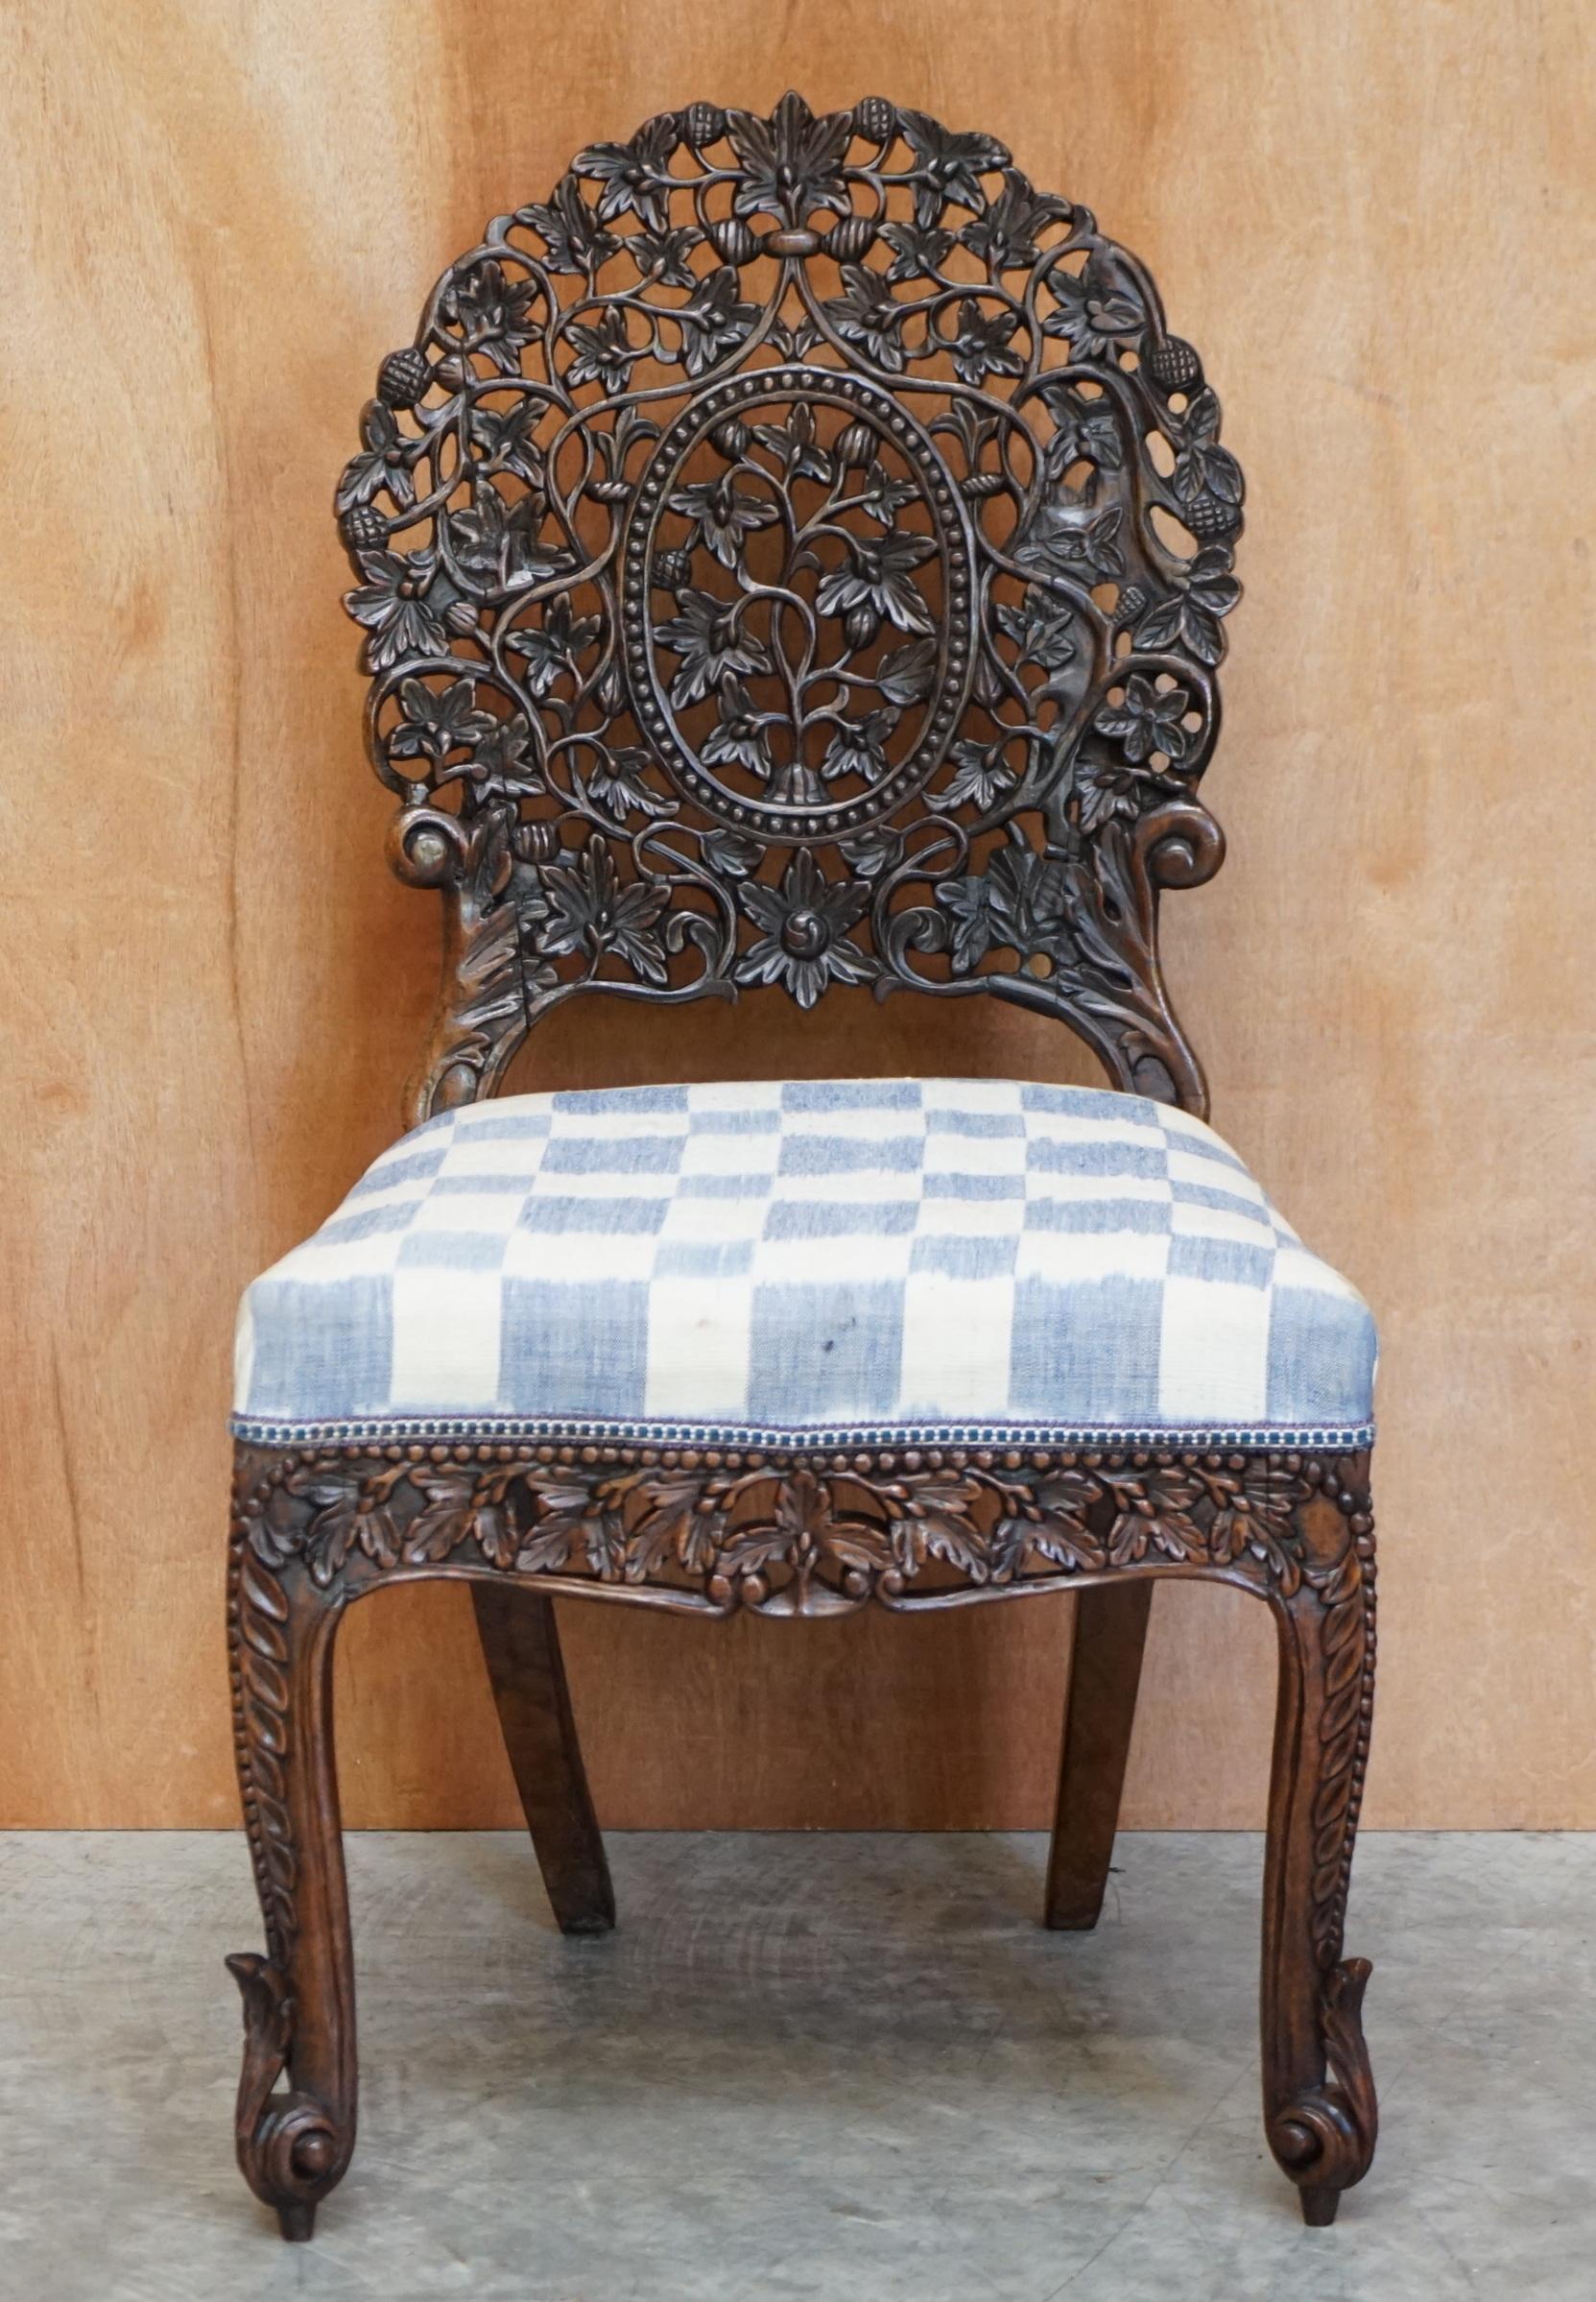 Nous sommes ravis d'offrir à la vente cette chaise originale en bois dur massif, sculptée à la main par des Anglo-Indiens et des Birmans

L'état est bon, il a été restauré et les cadres ont été vérifiés, collés et serrés si nécessaire. Il a